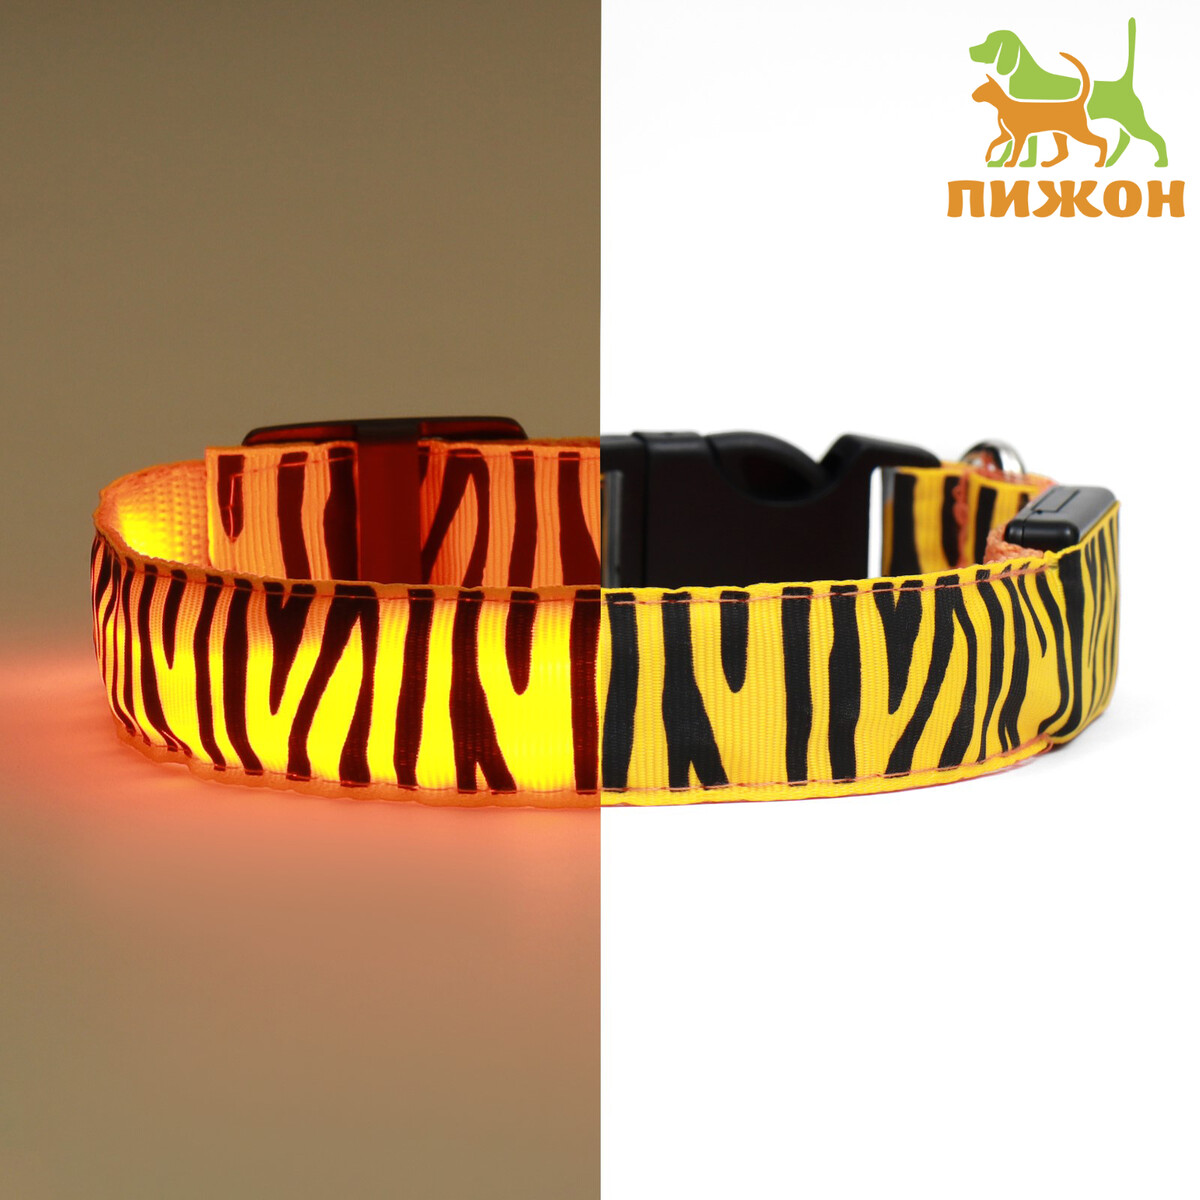 Ошейник с подсветкой тигр 3 режима свечения размер xl, ош 60-70 х 2,5 см оранжевый спать как тигр